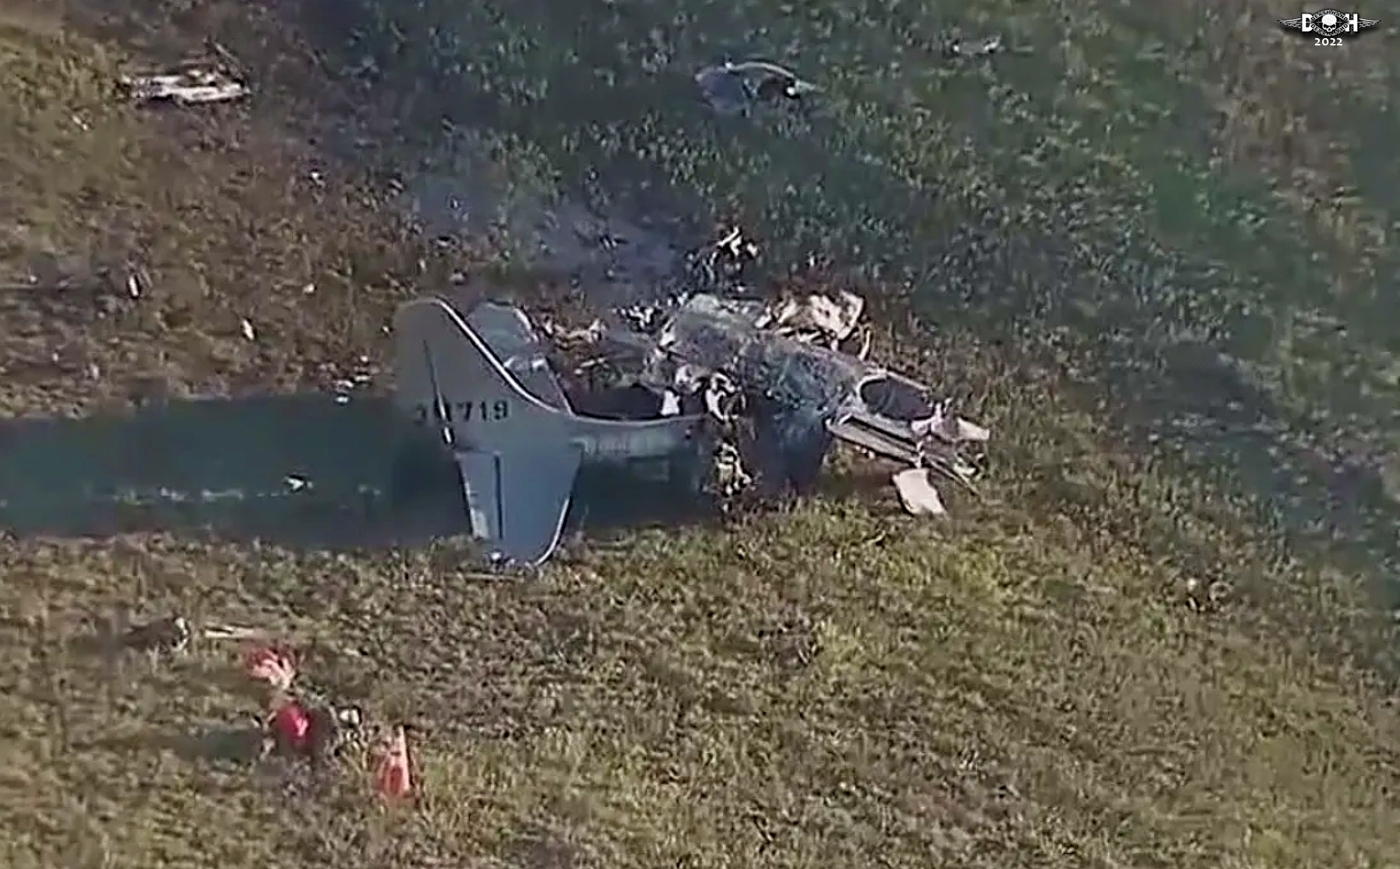 Dallas Air show crash 5 - Nov 14 2022 - DH.jpg